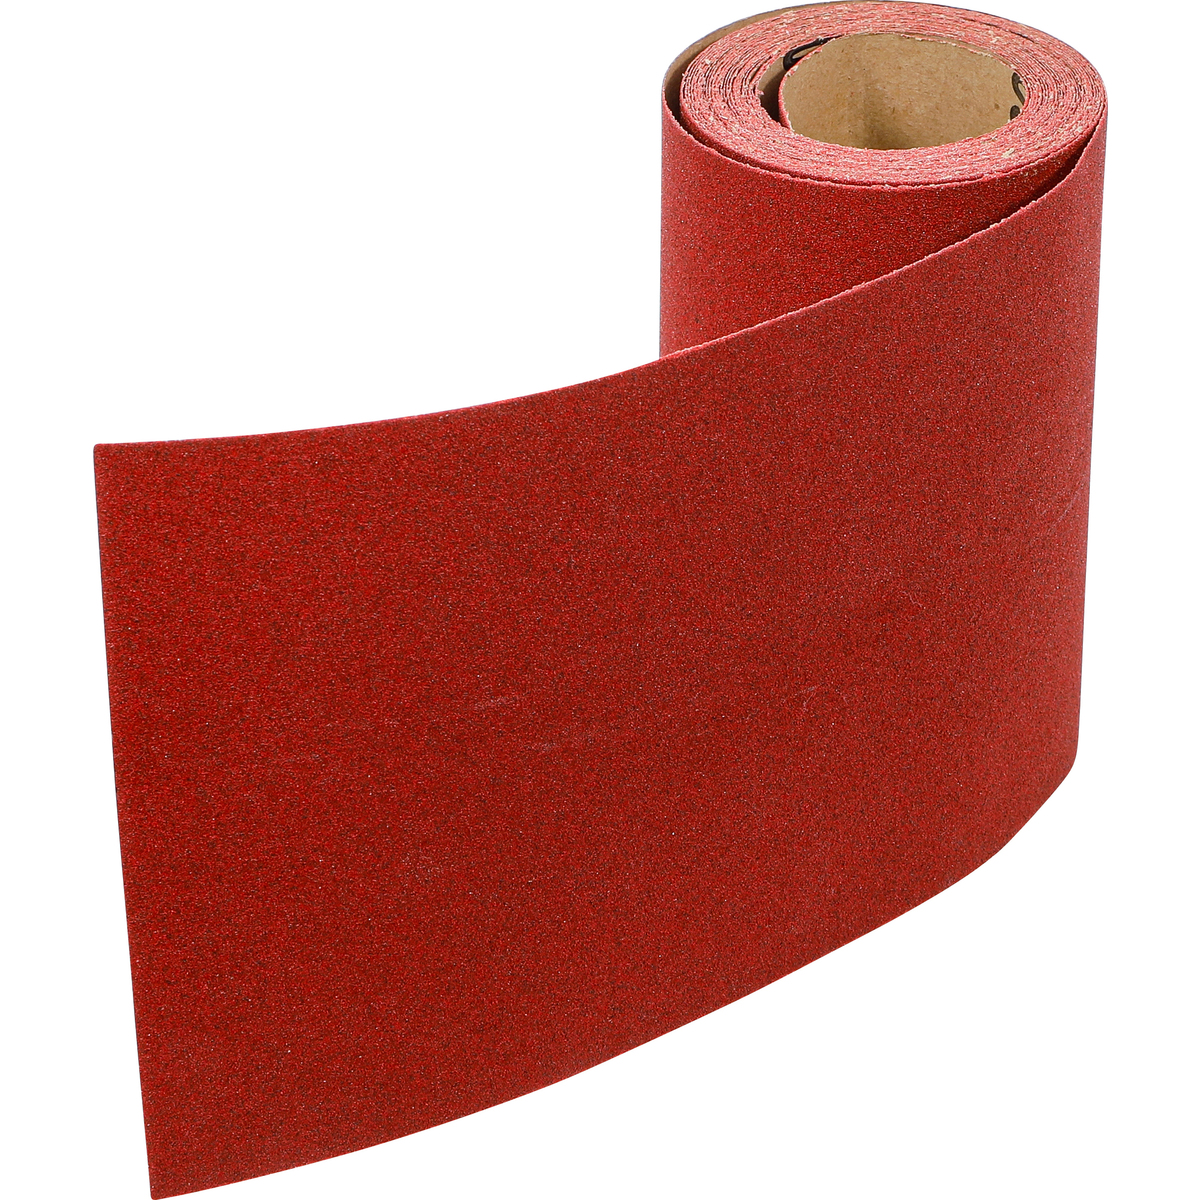 Rouleau de papier abrasif grain 100, 5 mx 94 mm, rouleau de papier abrasif  durable, pour ponceuses à bande, outils de polissage pour bois, métal